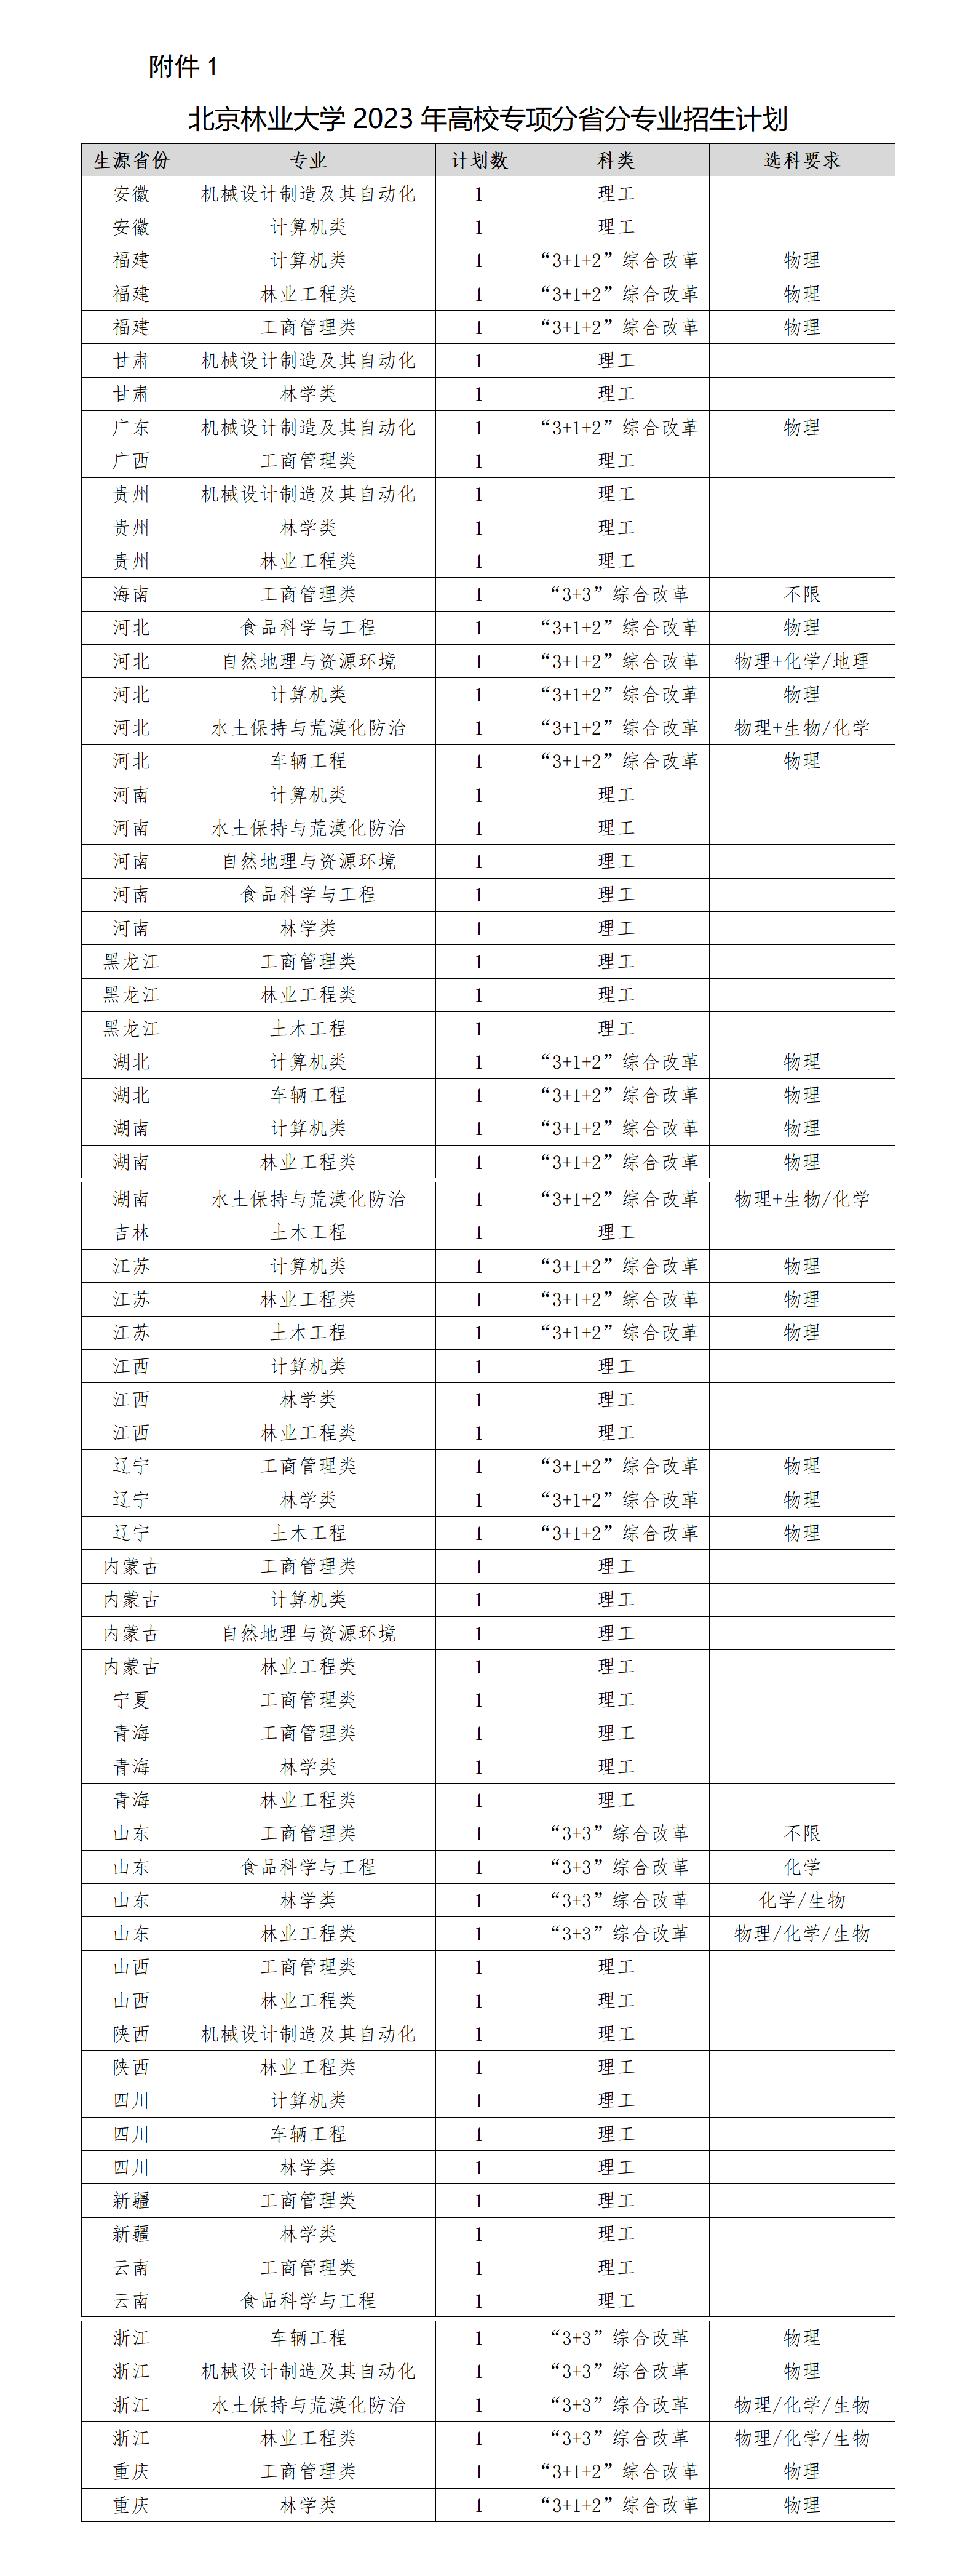 北京林业大学2023年高校专项计划招生简章